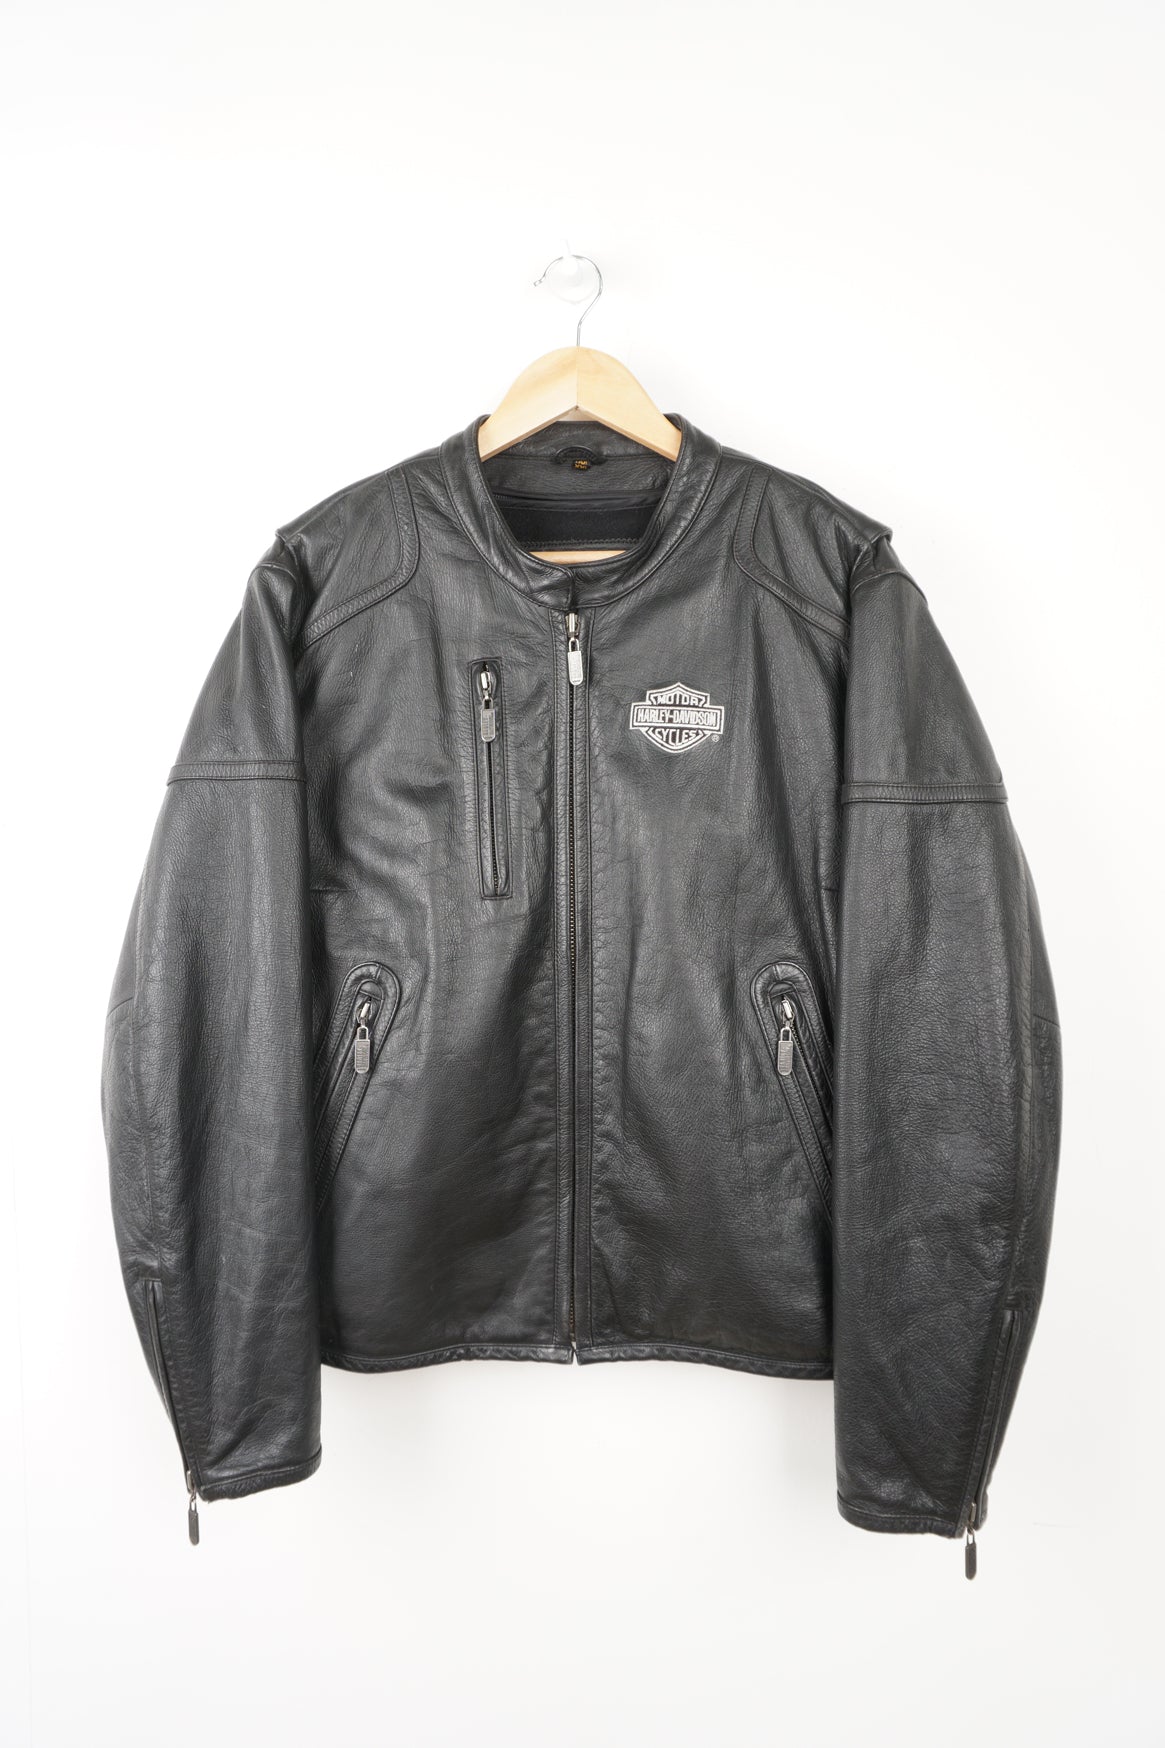 Harley Davidson Leather Jacket – VintageFolk